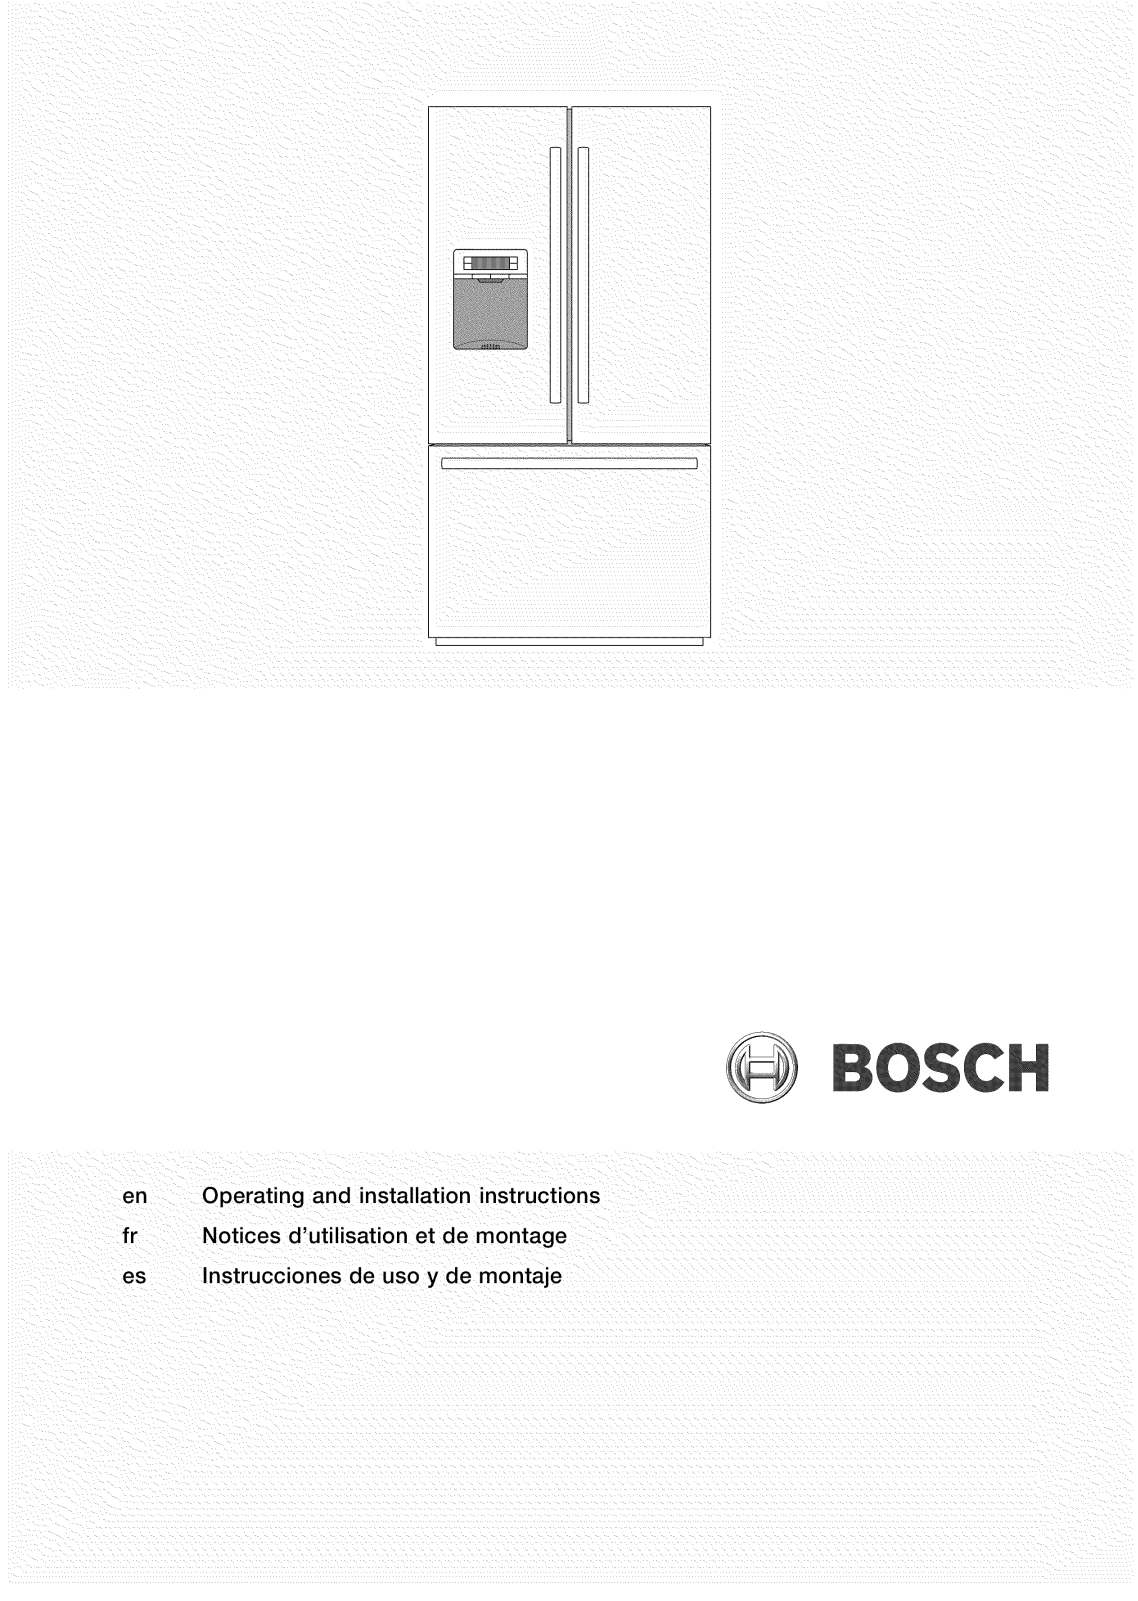 Bosch B26FT70SNS/03, B26FT70SNS/02, B26FT70SNS/01 Owner’s Manual